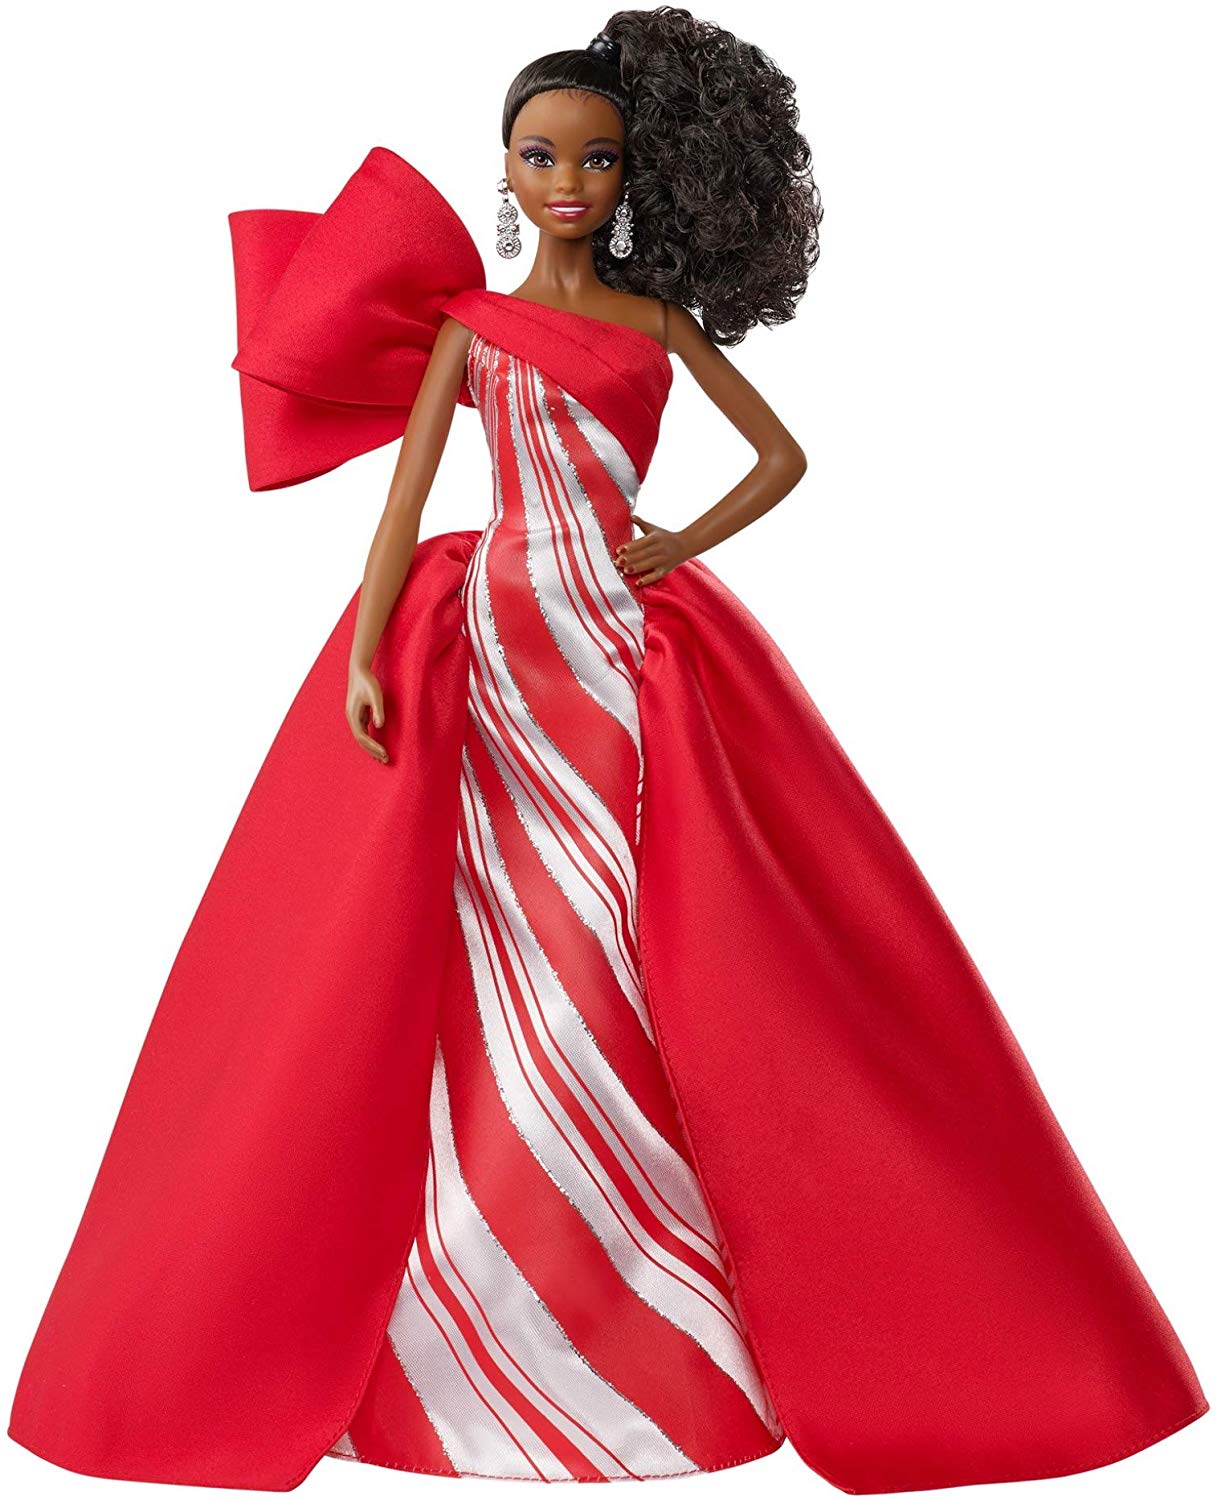 Barbie Natale.La Nuova Barbie Magia Delle Feste 2019 Bionda Afro E Brunette Giocattoli In Vetrina